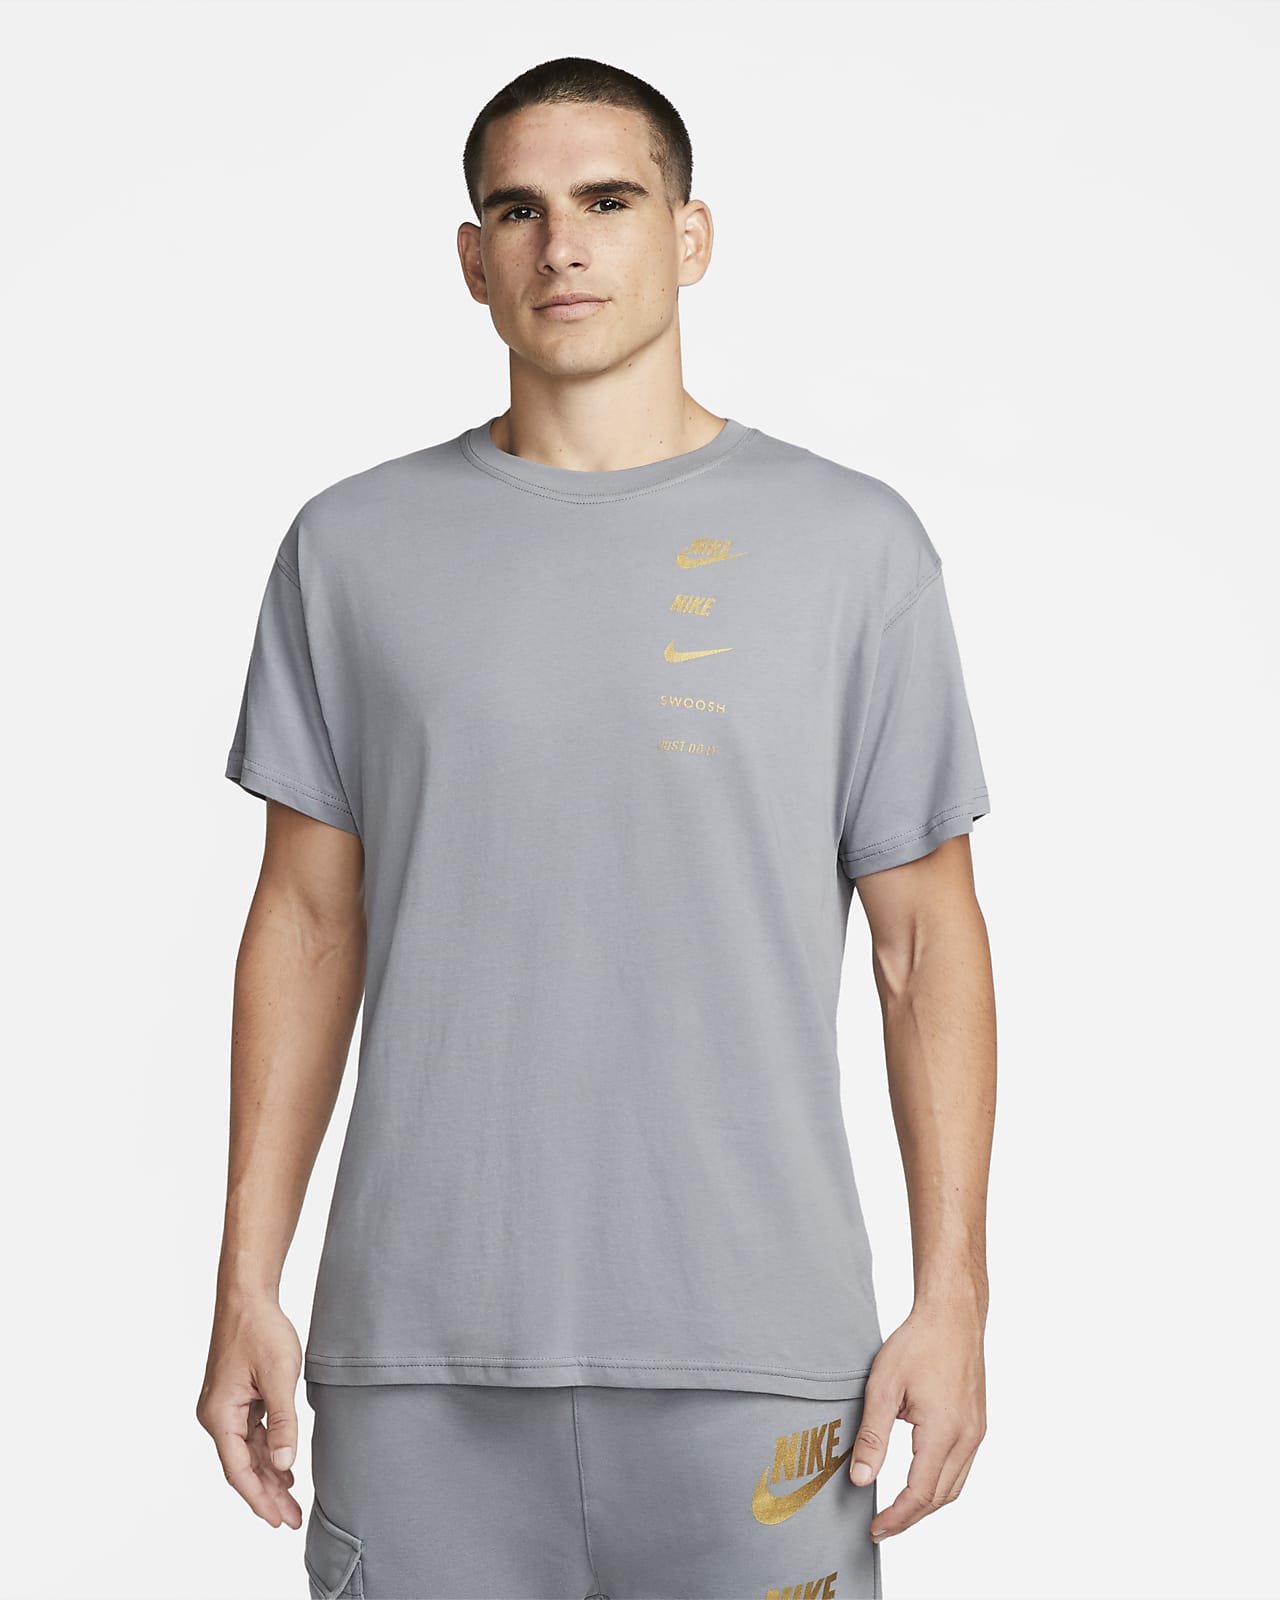 Nike Sportswear Standard Issue Men's T-Shirt. Nike BE